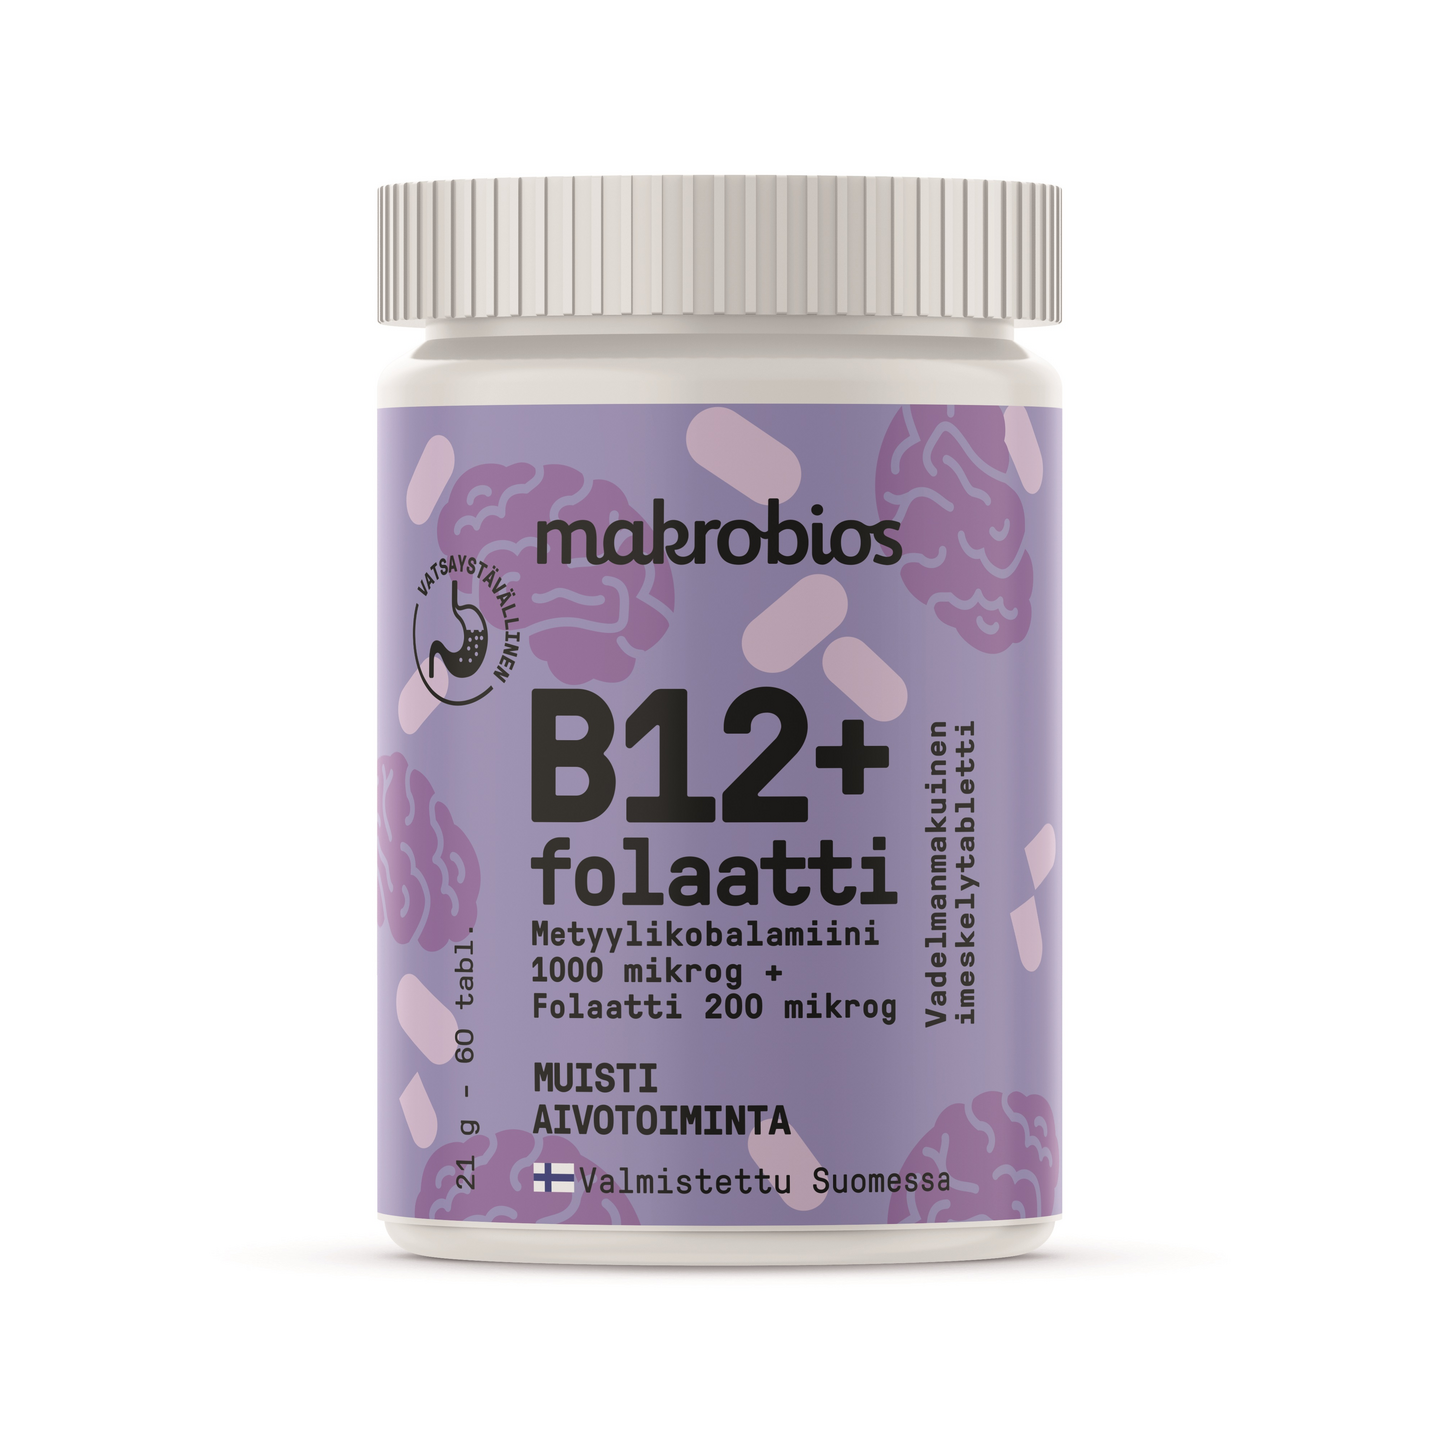 Makrobios B12+folaatti 200mg 60tabl 21g